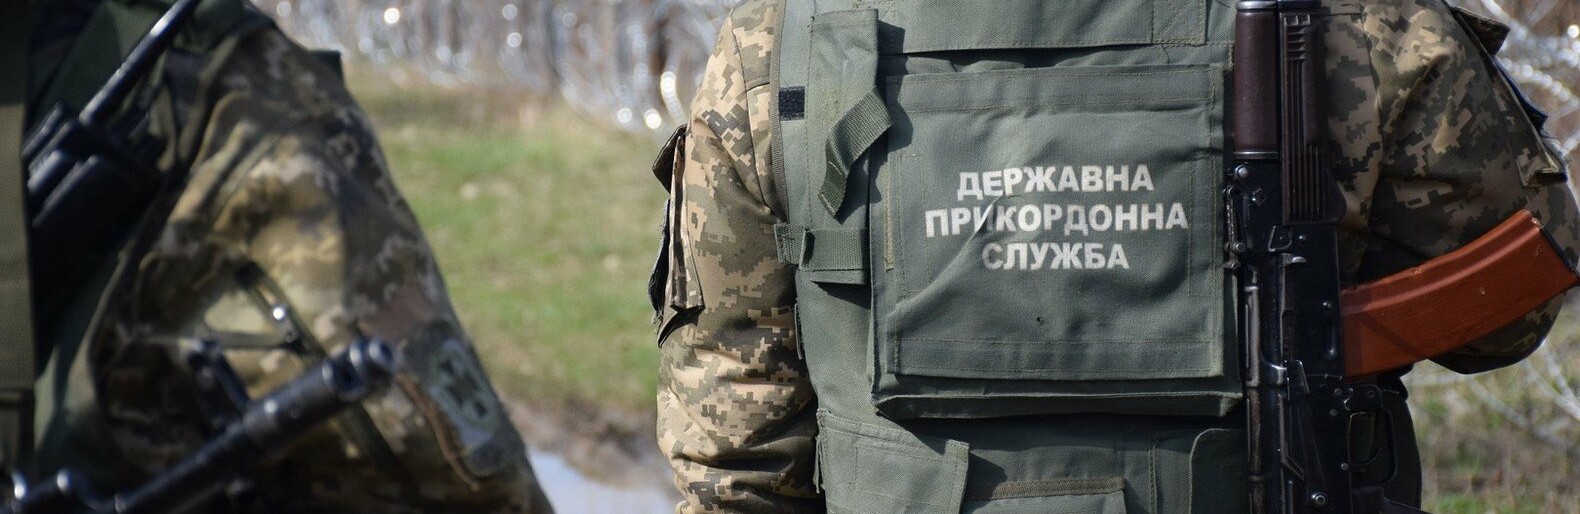 В Бердянске зафиксированы 52 нарушения пограничного режима